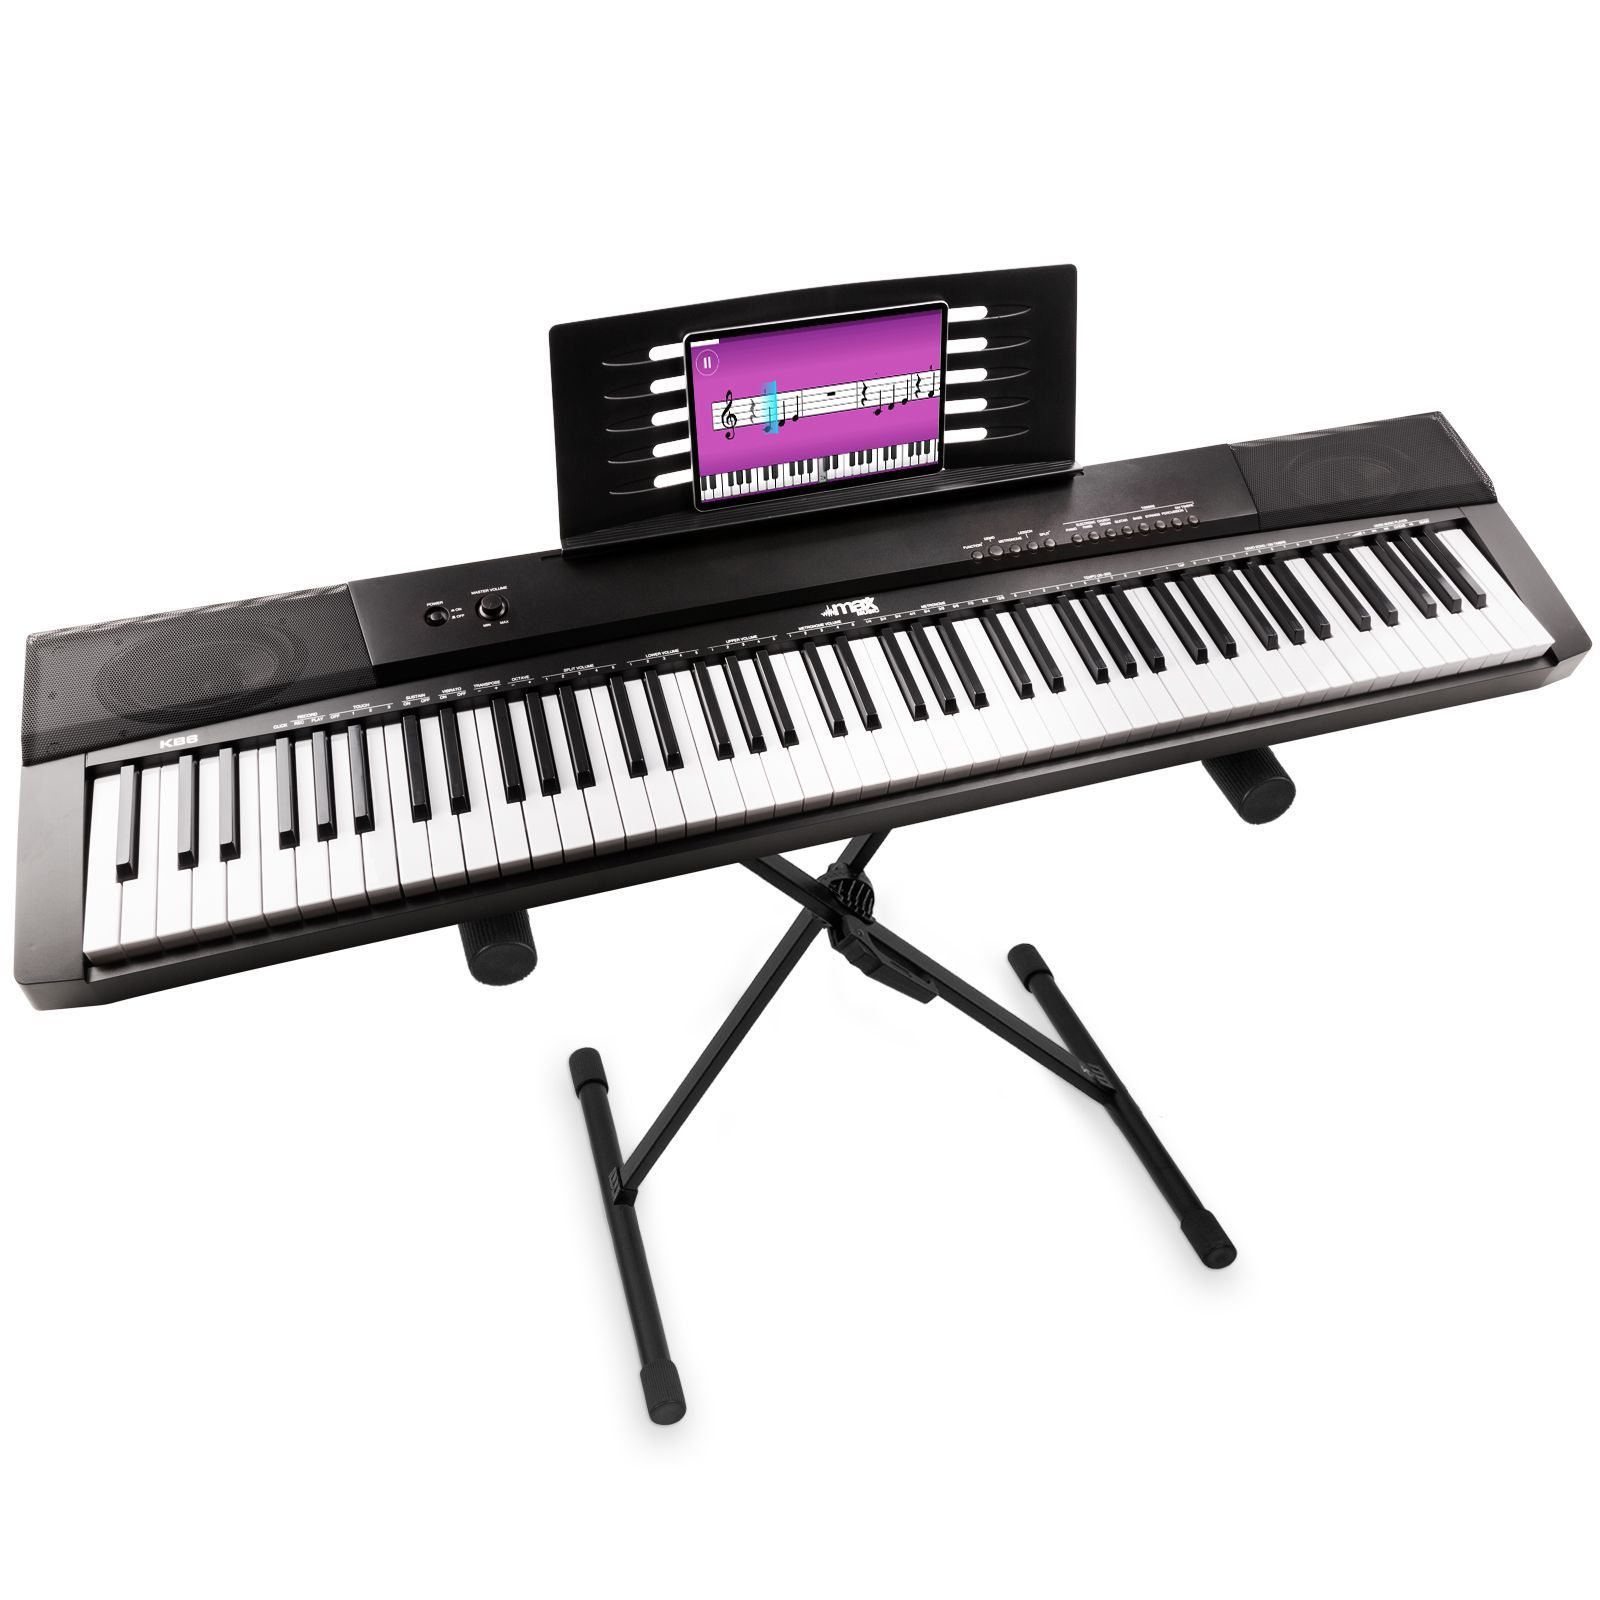 Quel est le meilleur stand pour un clavier, un piano ou un synthé ?